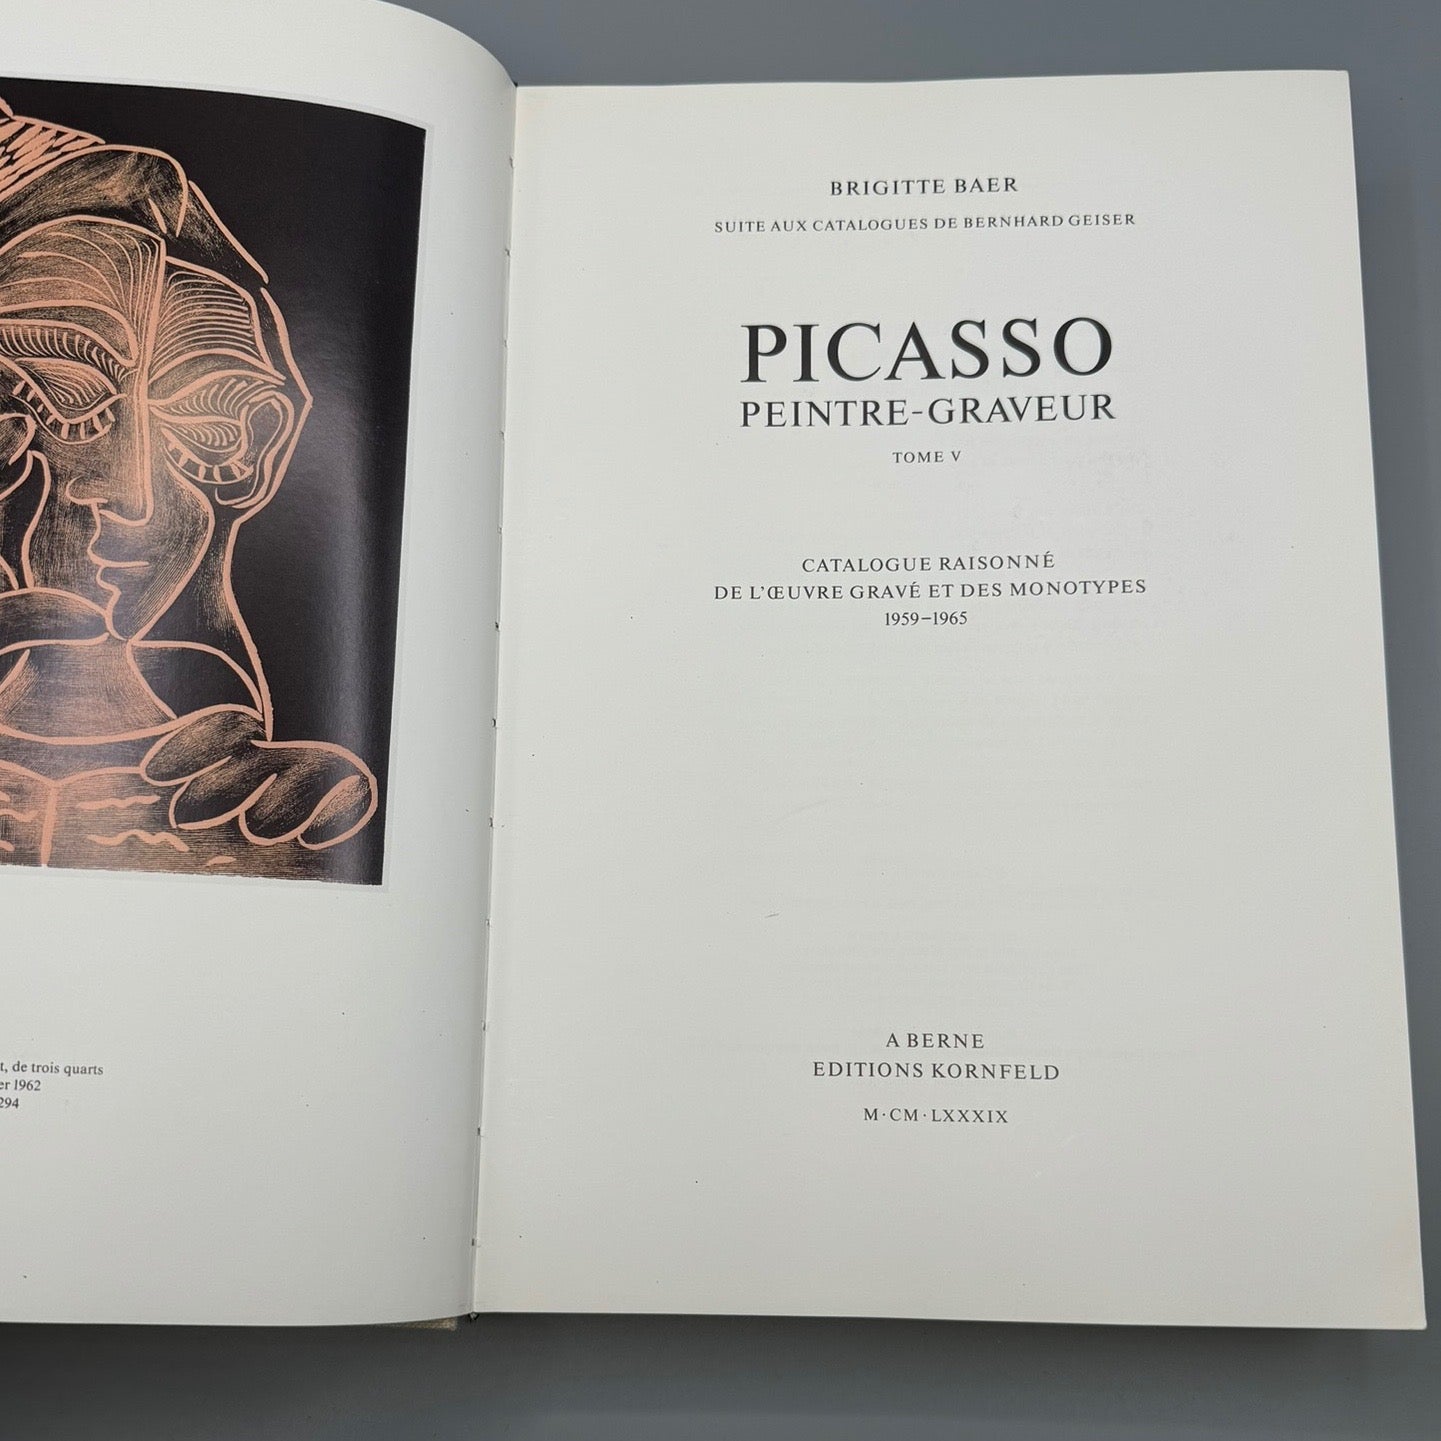 Picasso: Peintre-Graveur (Tome V, Catalogue Raisonne de L'Oeuvre Grave et Des Monotypes, 1959-1969